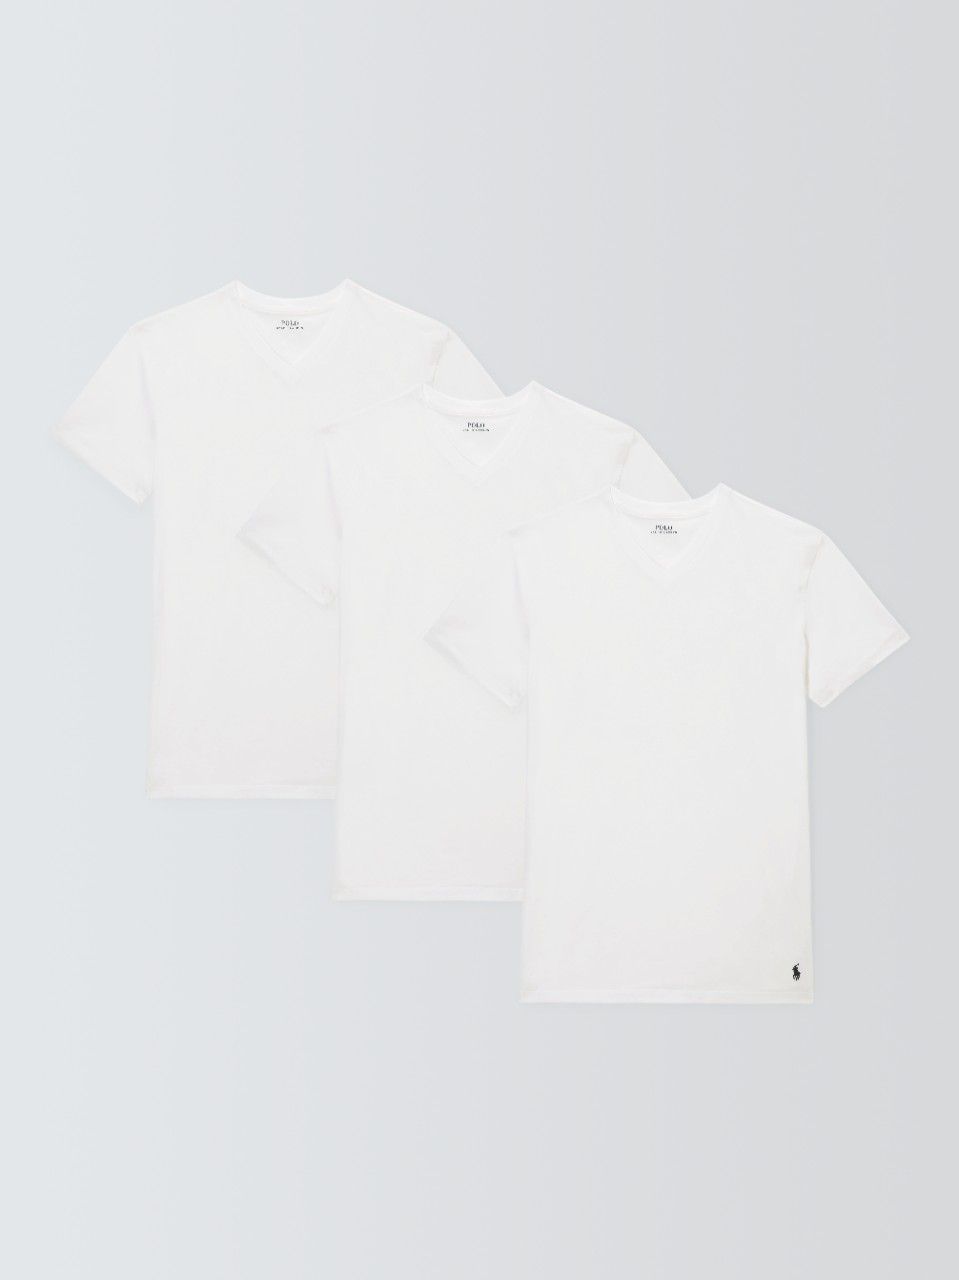 Ralph Lauren V-Neck T-Shirt, Pack of 3, White, M